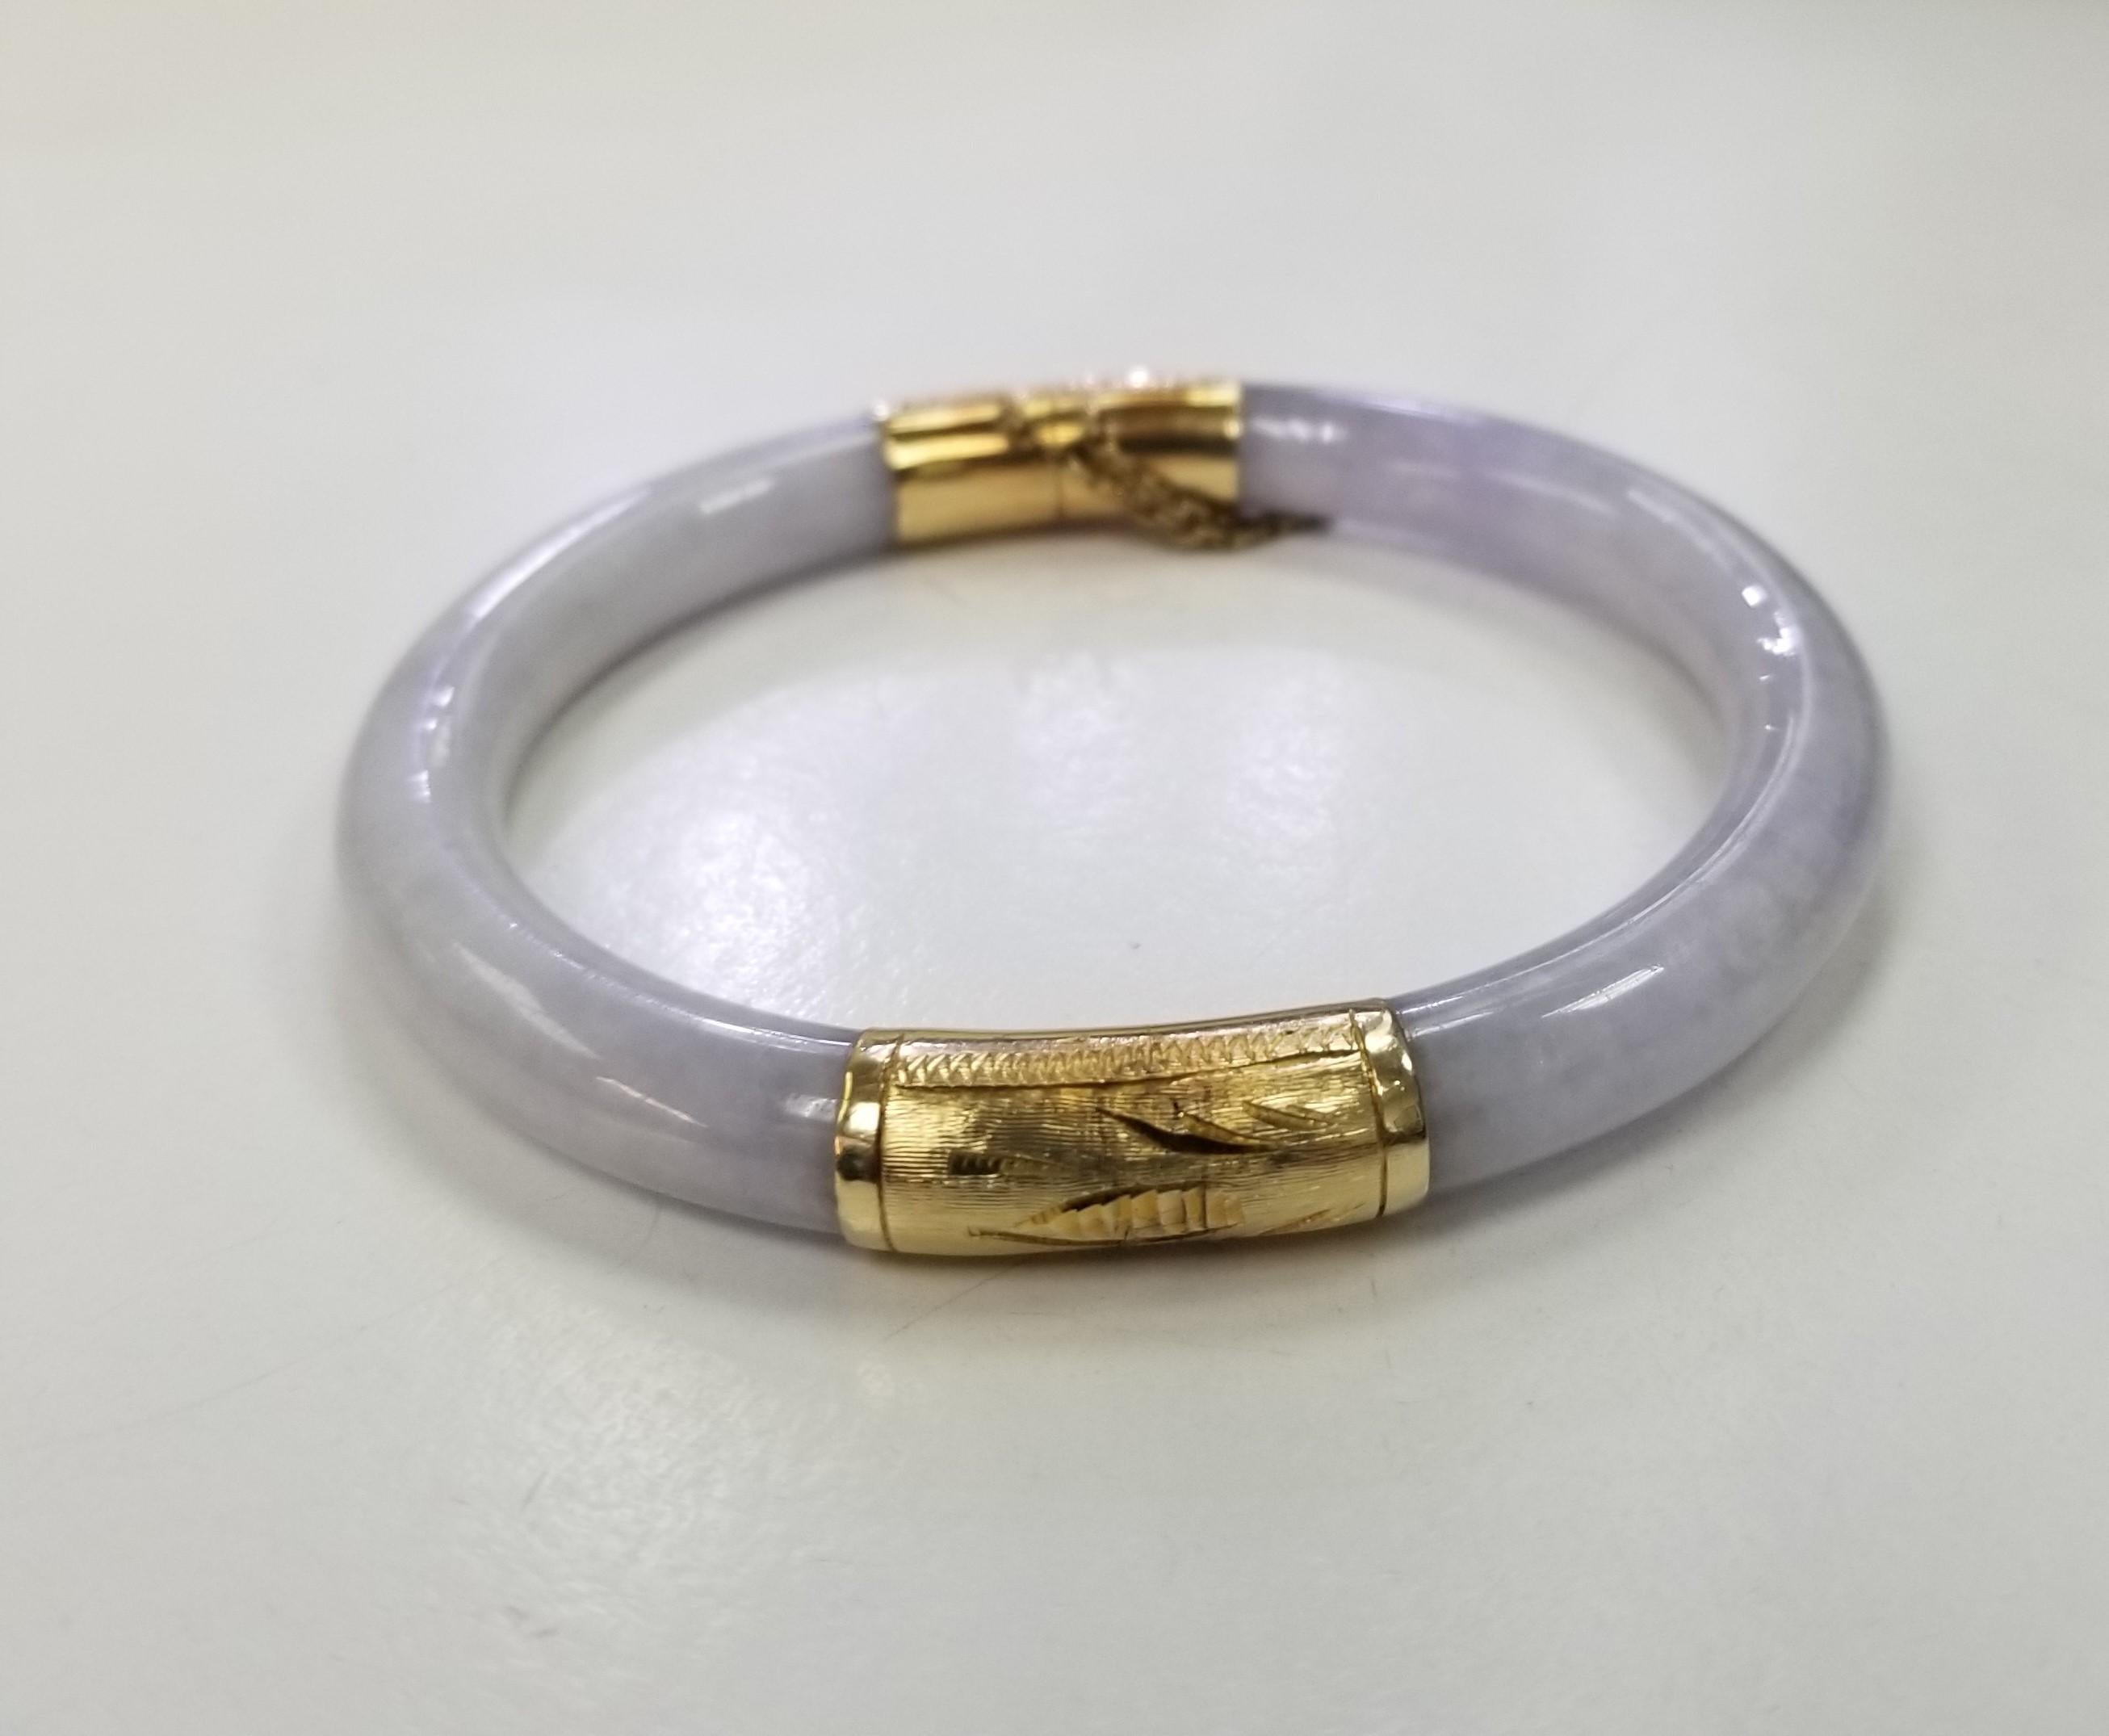 Bracelet à charnière en or jaune 14 carats et jade lavande. Ce bracelet en jade lavande sculpté est doté d'embouts en or gravés de fleurs, d'une charnière à une extrémité et d'un fermoir à l'autre.
Largeur : 7,25 mm
28 grammes
* Veuillez noter qu'il